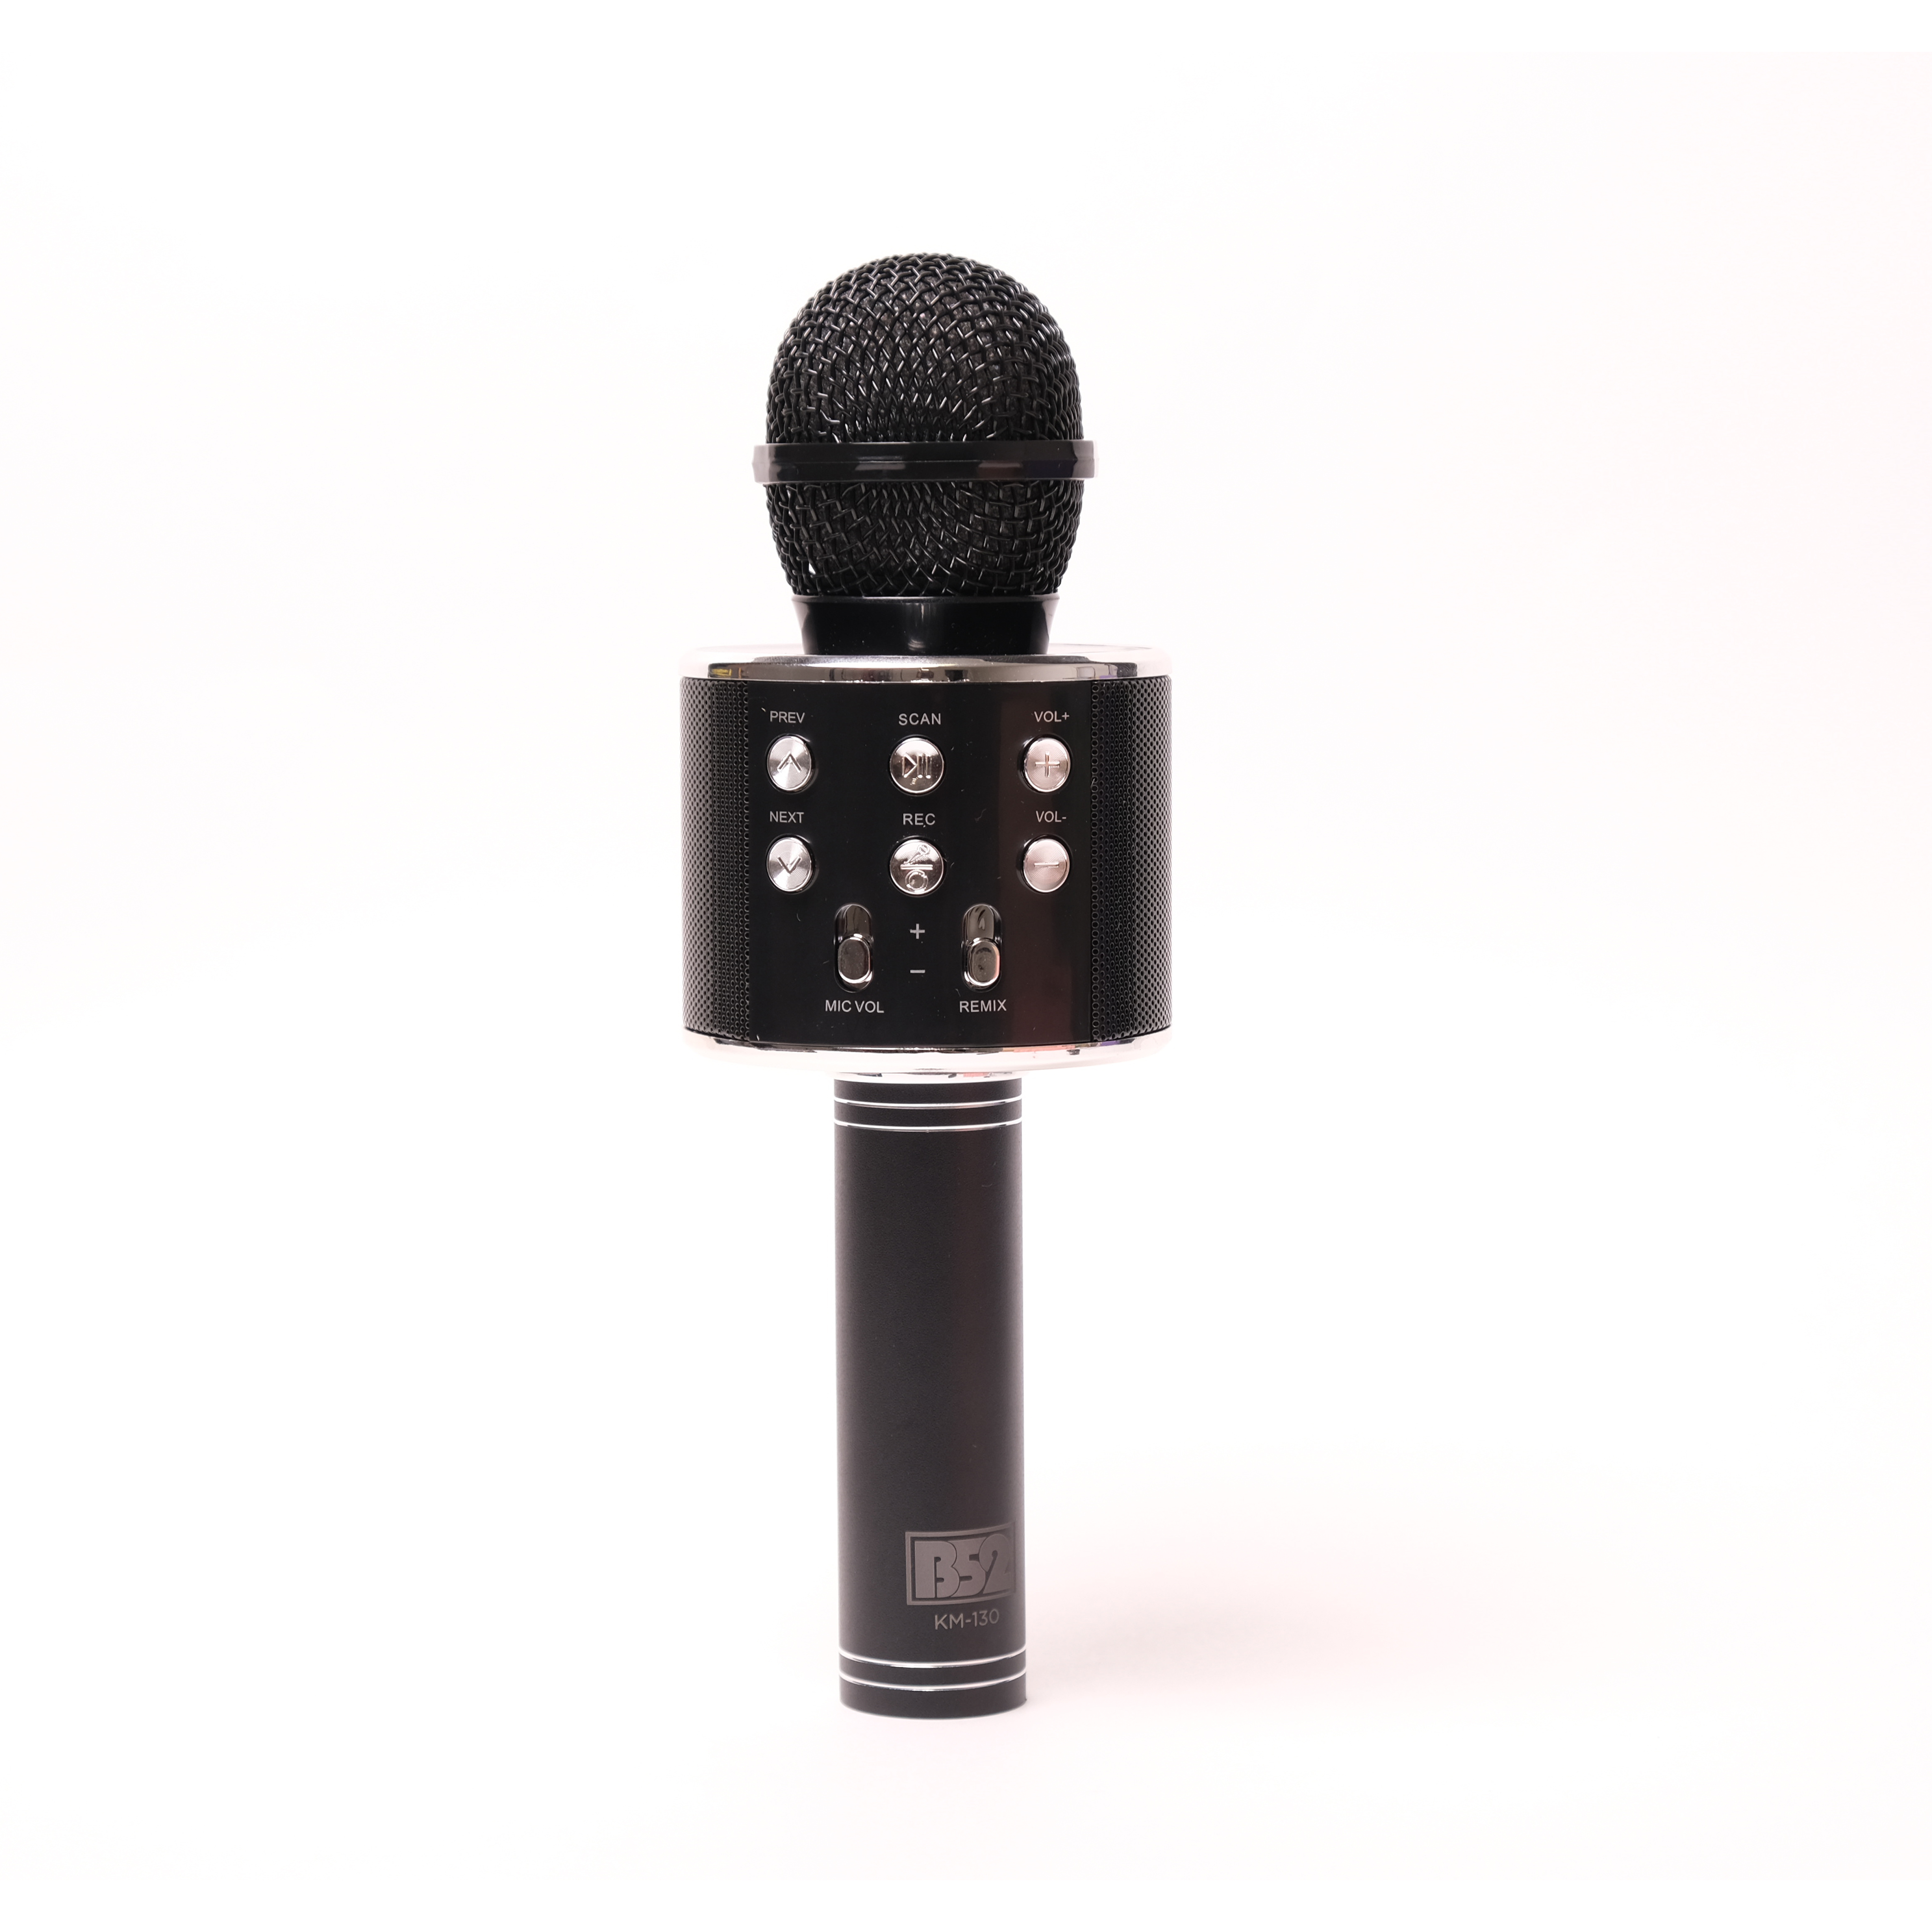 Микрофон B52 KM-130B чёрный, для караоке, беспроводной, 3Вт, АКБ 800мА/ч, BT (до10м), USB